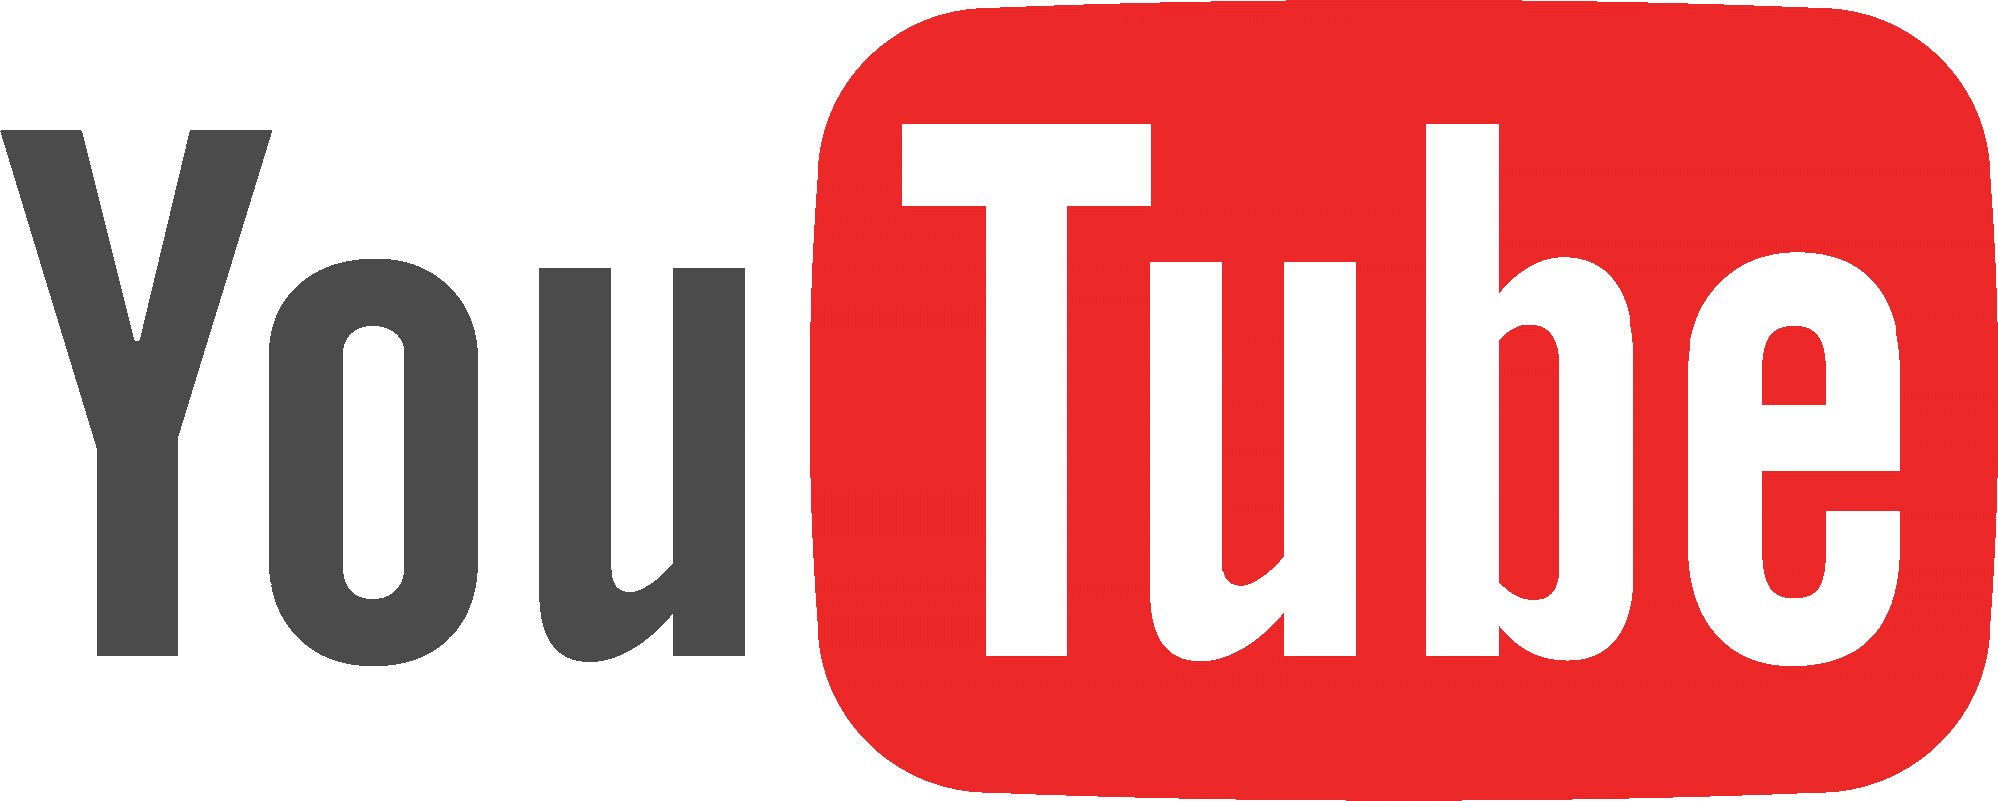 YouTube-logo-full_color12